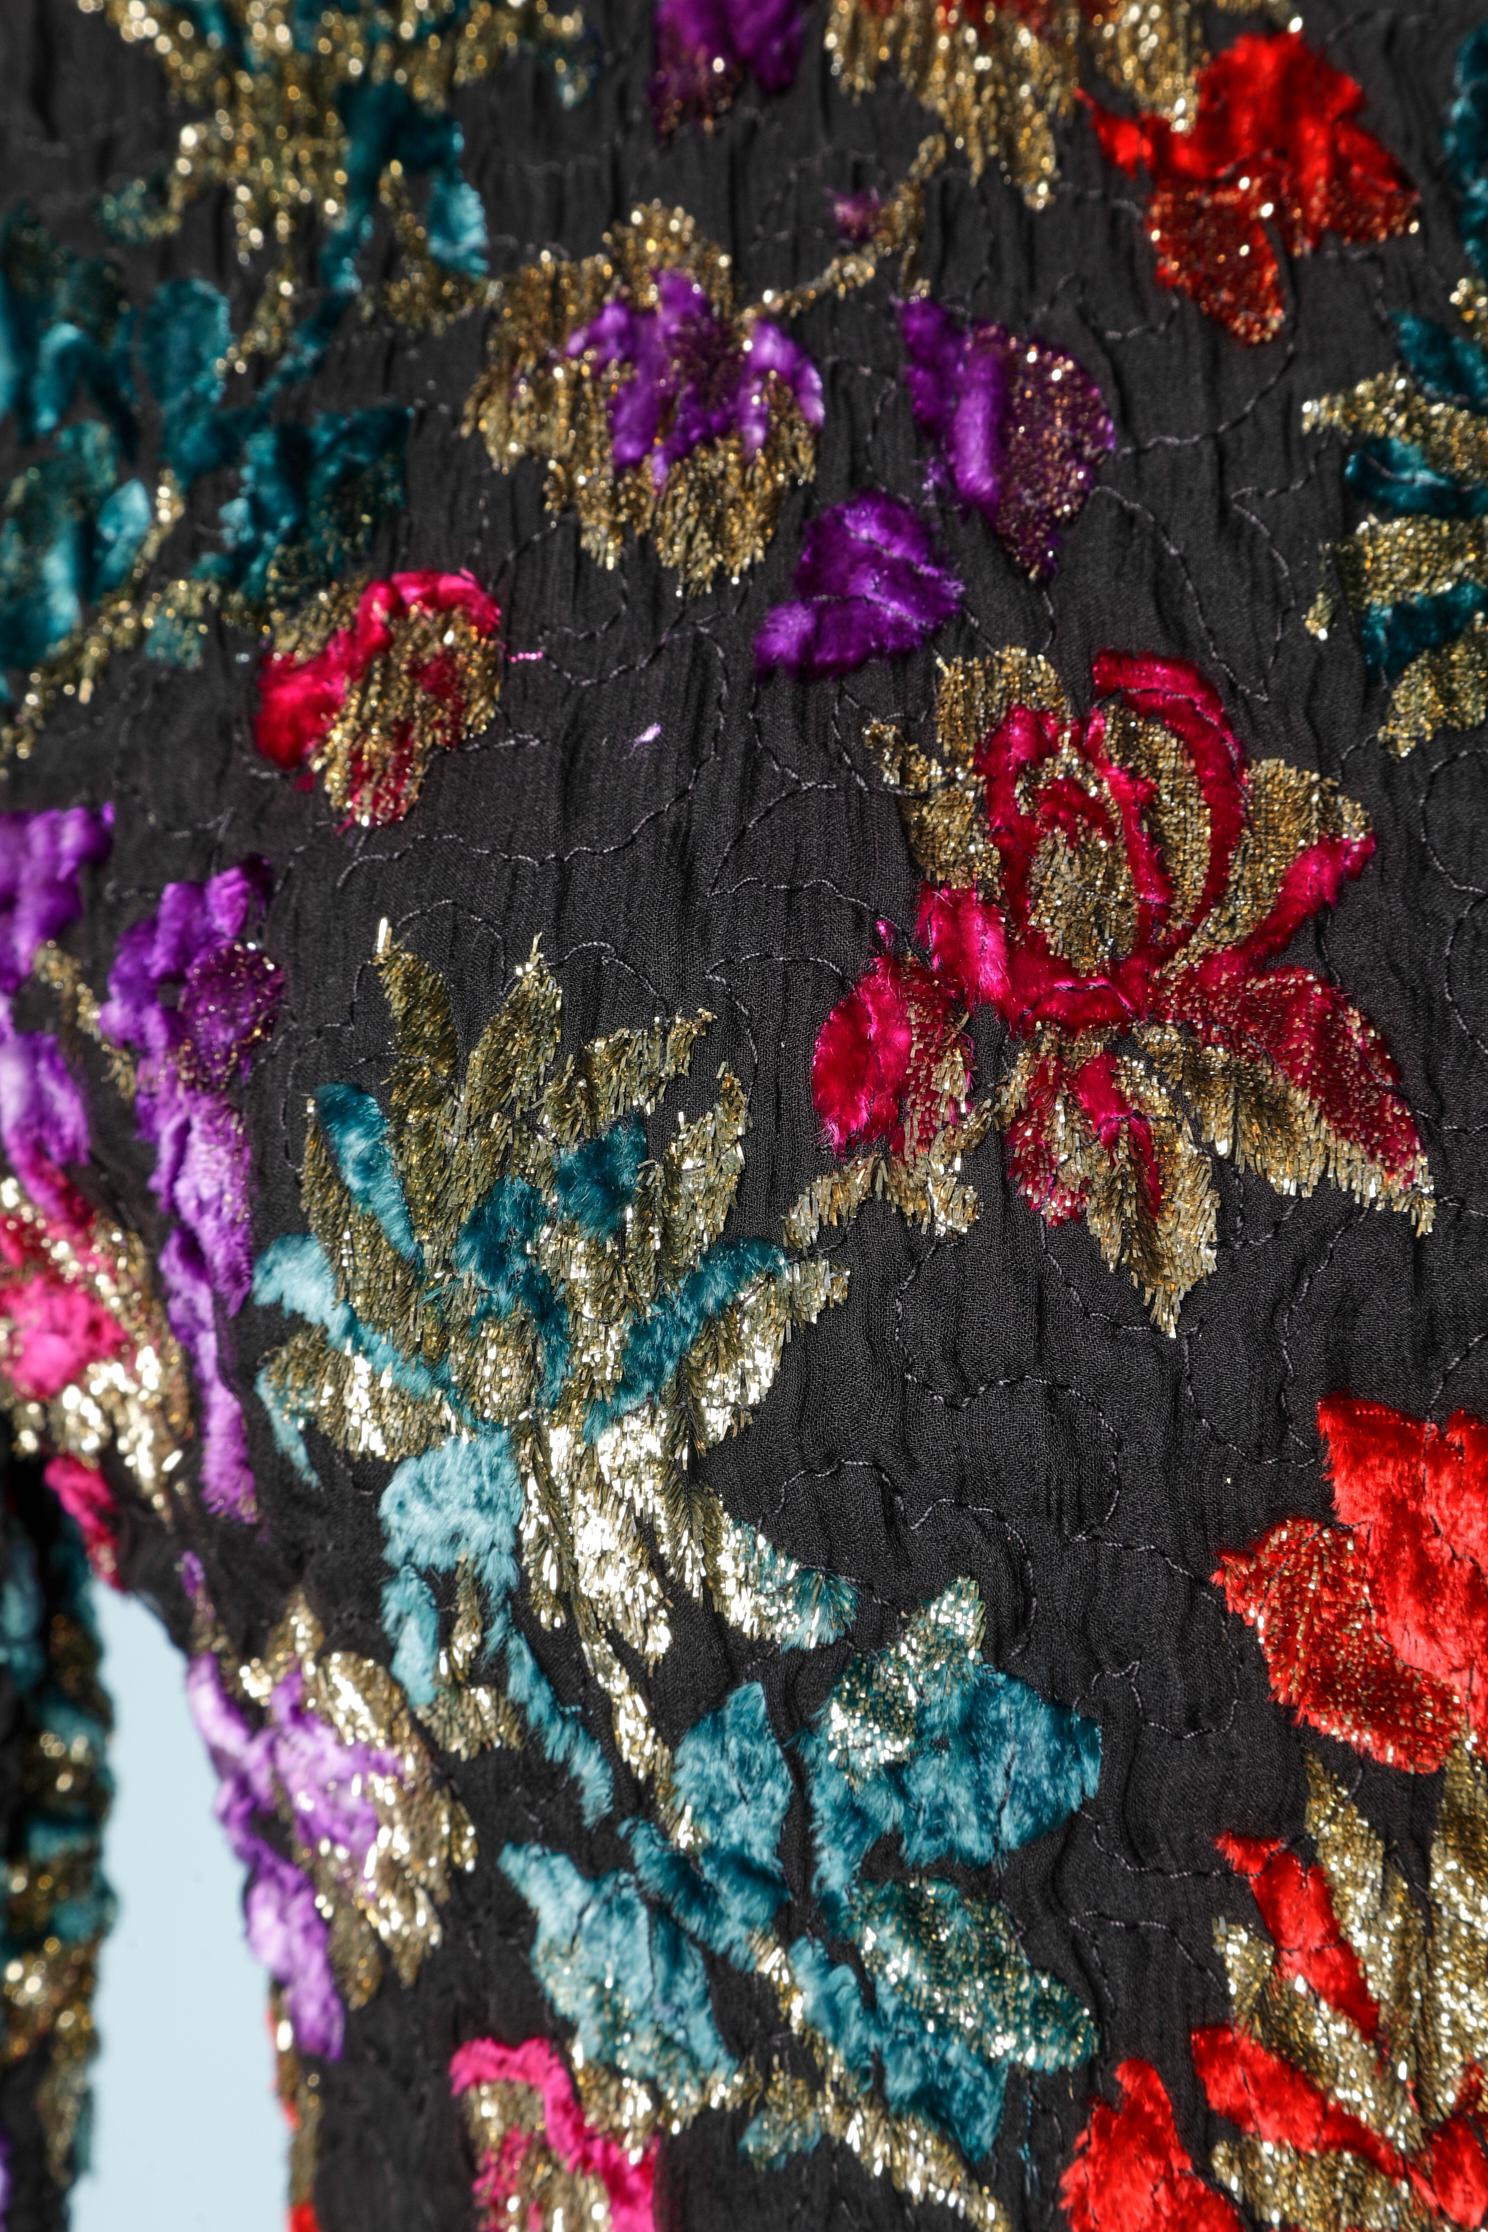 Evening dress in velvet lurex with flower pattern.
Size M (38)